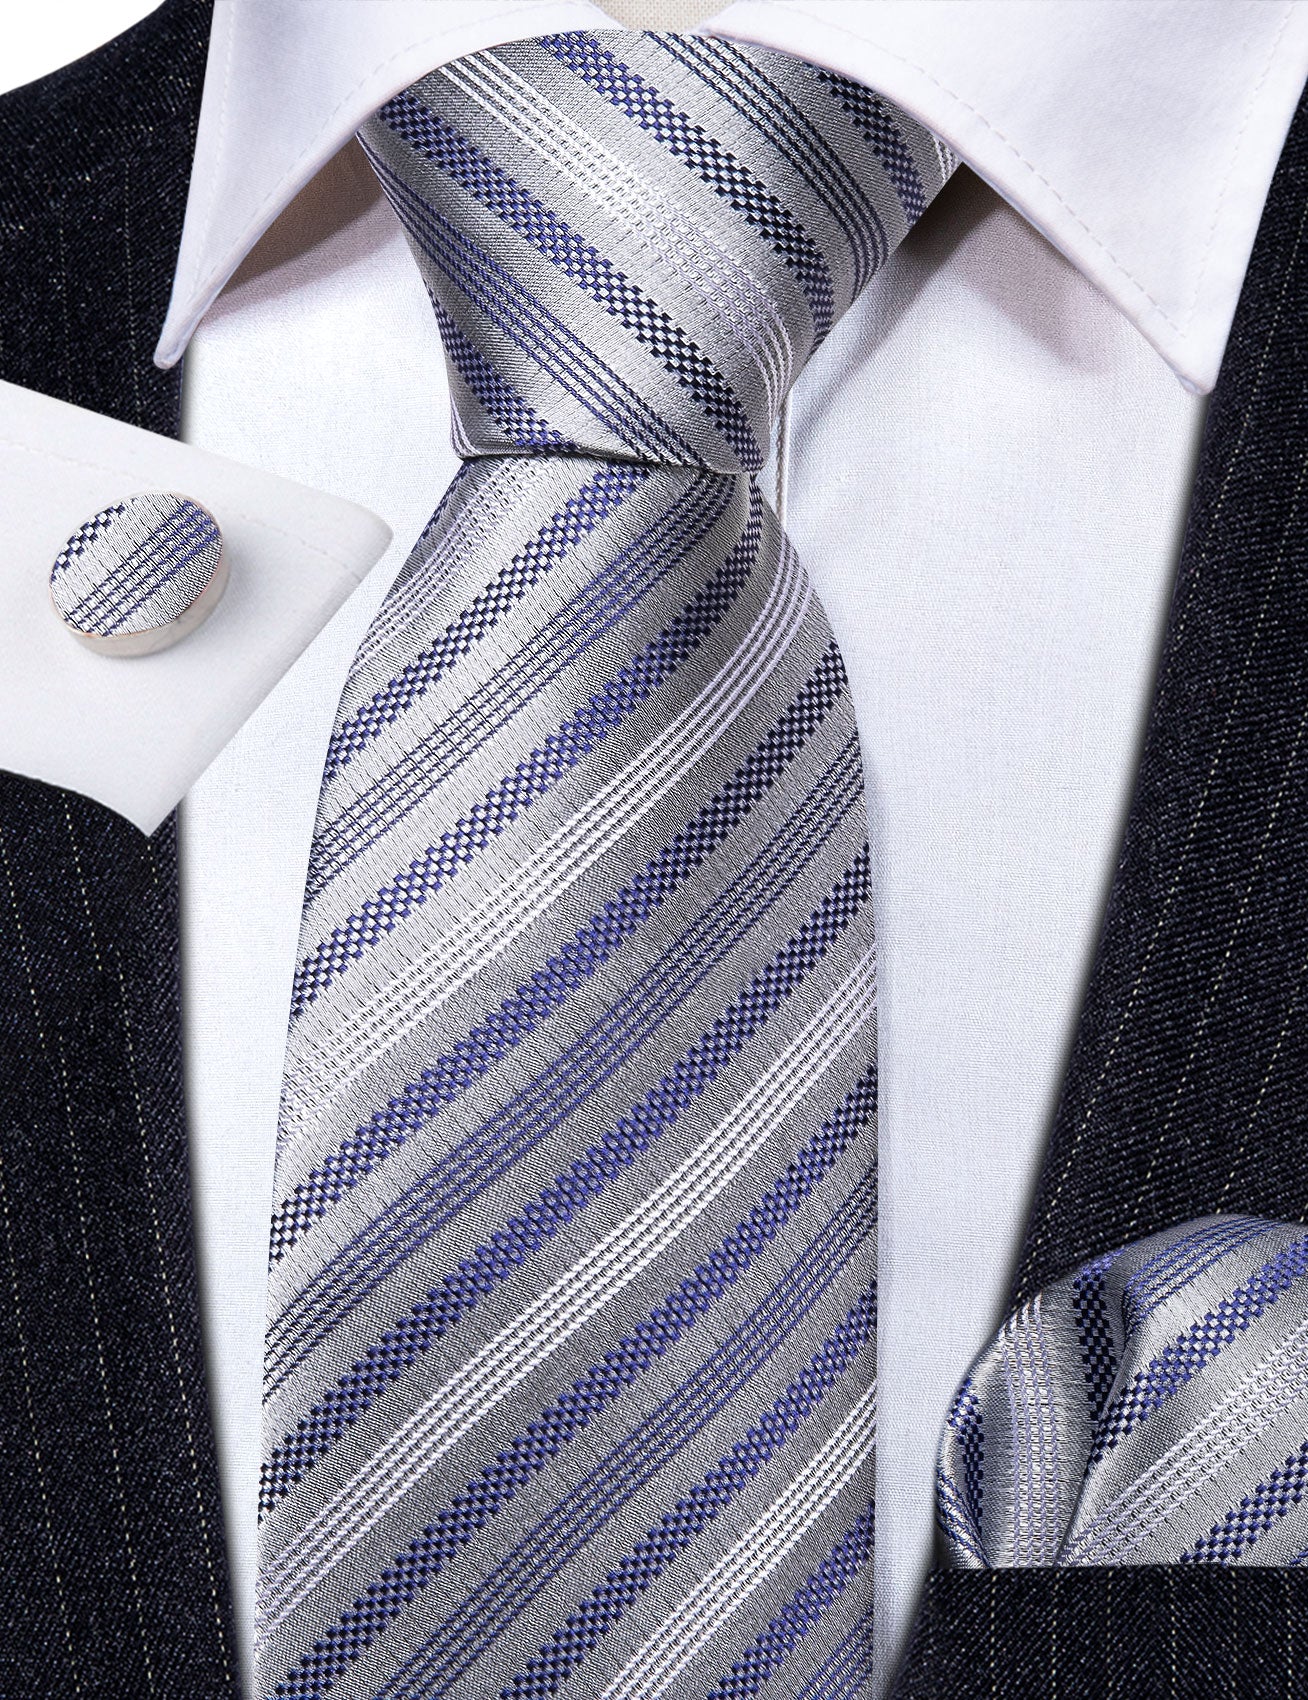 Grey Blue Striped Silk Tie Handkerchief Cufflinks Set